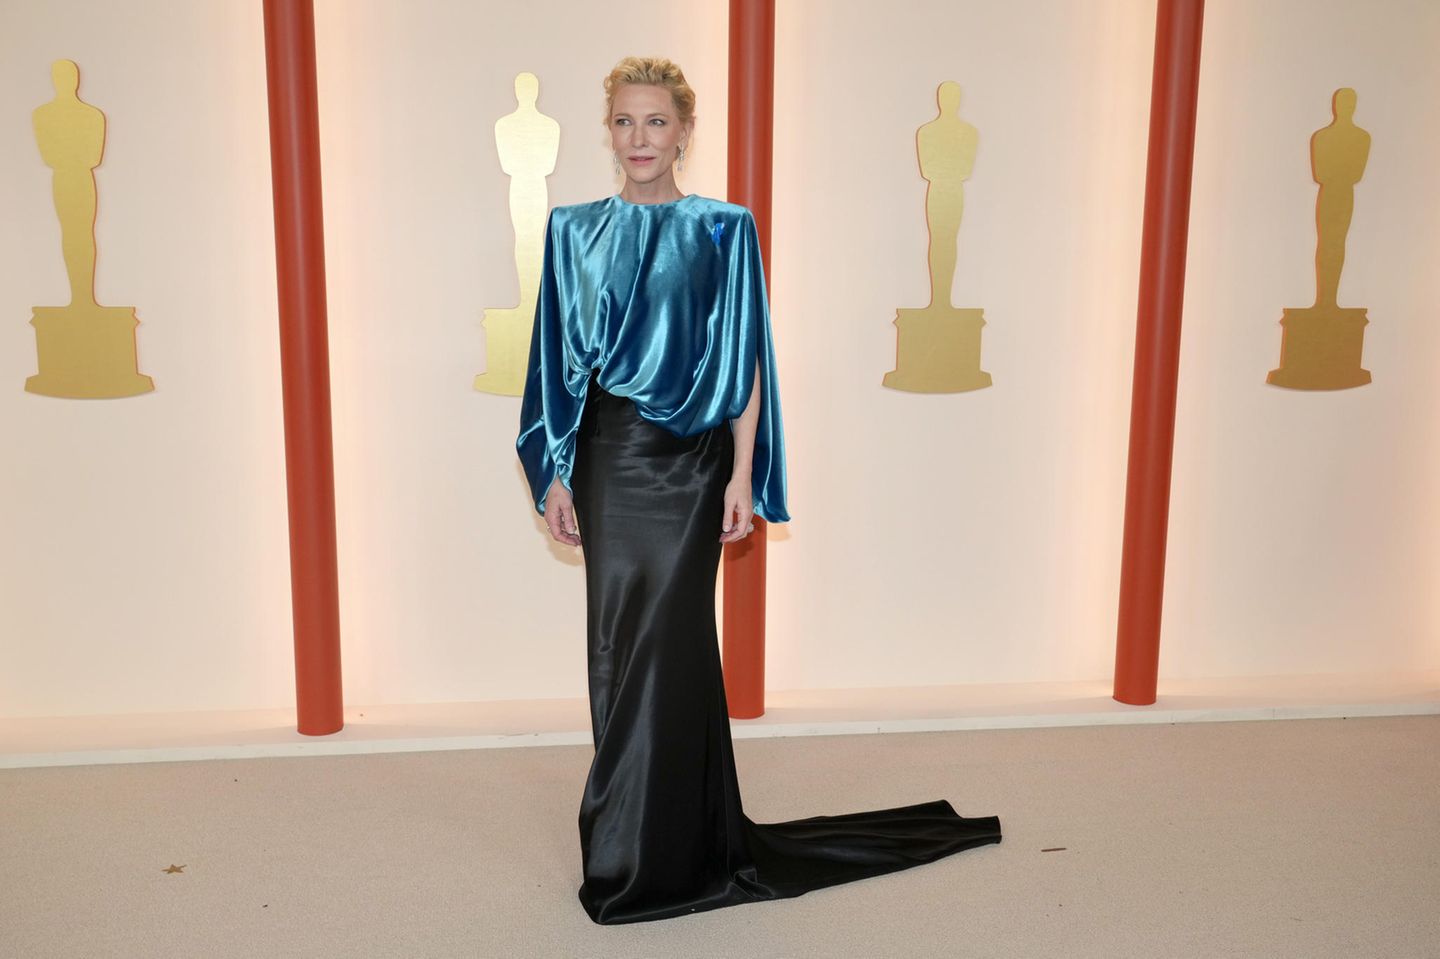 Ç’kuptim ka fjongoja blu në veshjen e Cate Blanchett?Ashtu si në edicionin e vitit të kaluar, edhe këtë vit, disa yje të famshëm si Cate Blanchett 